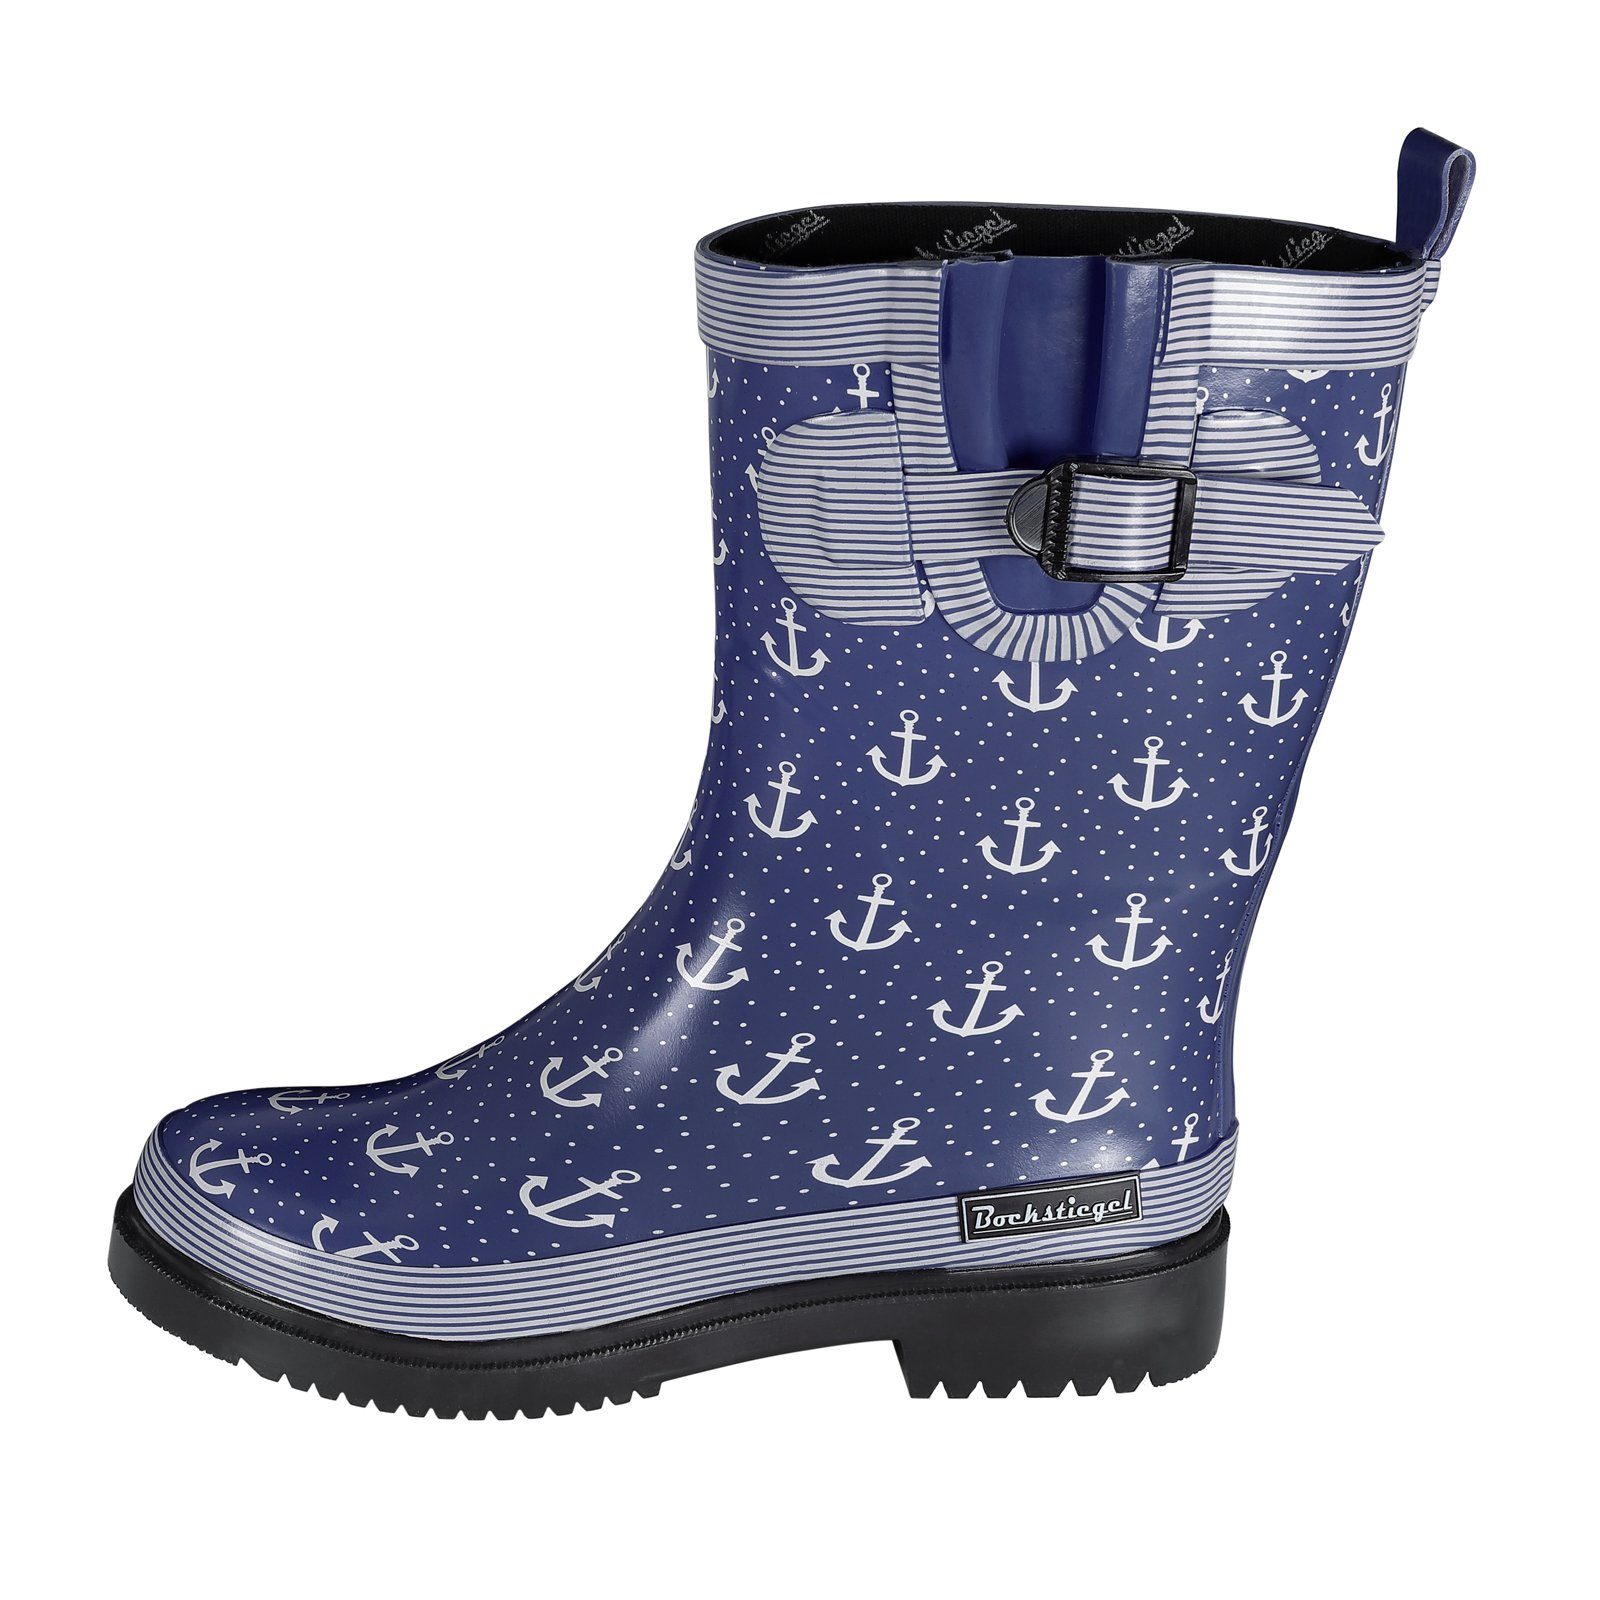 SALIHA Bockstiegel Gummistiefel Damen Regenstiefel Marleen – Stiefel für Frauen mit Anker-Print blau